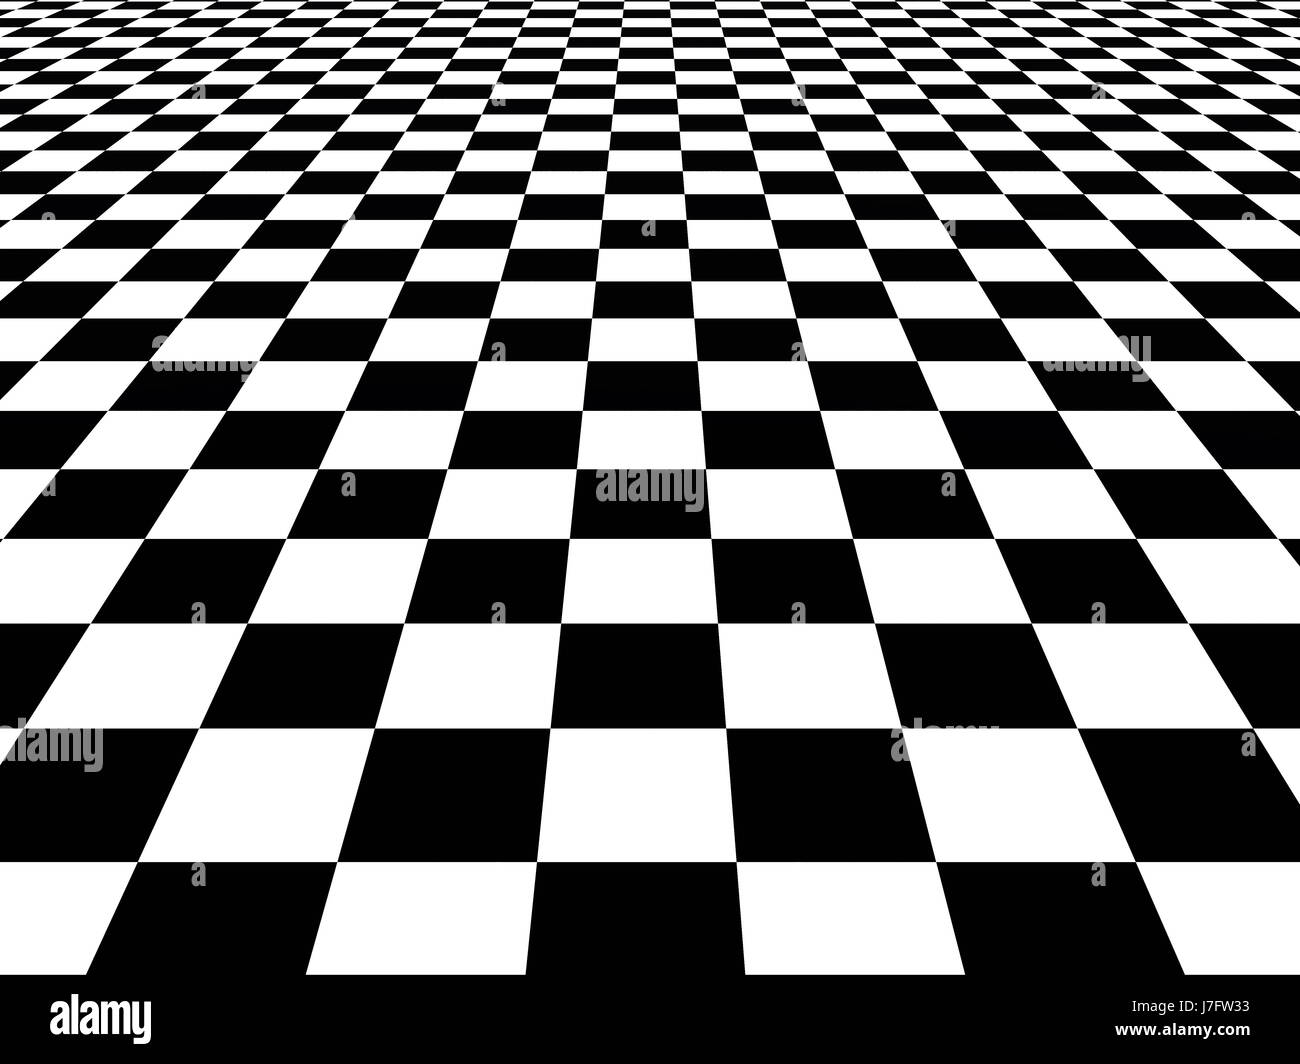 Échiquier échecs sens infini board jouer hallucination transposer texture Banque D'Images